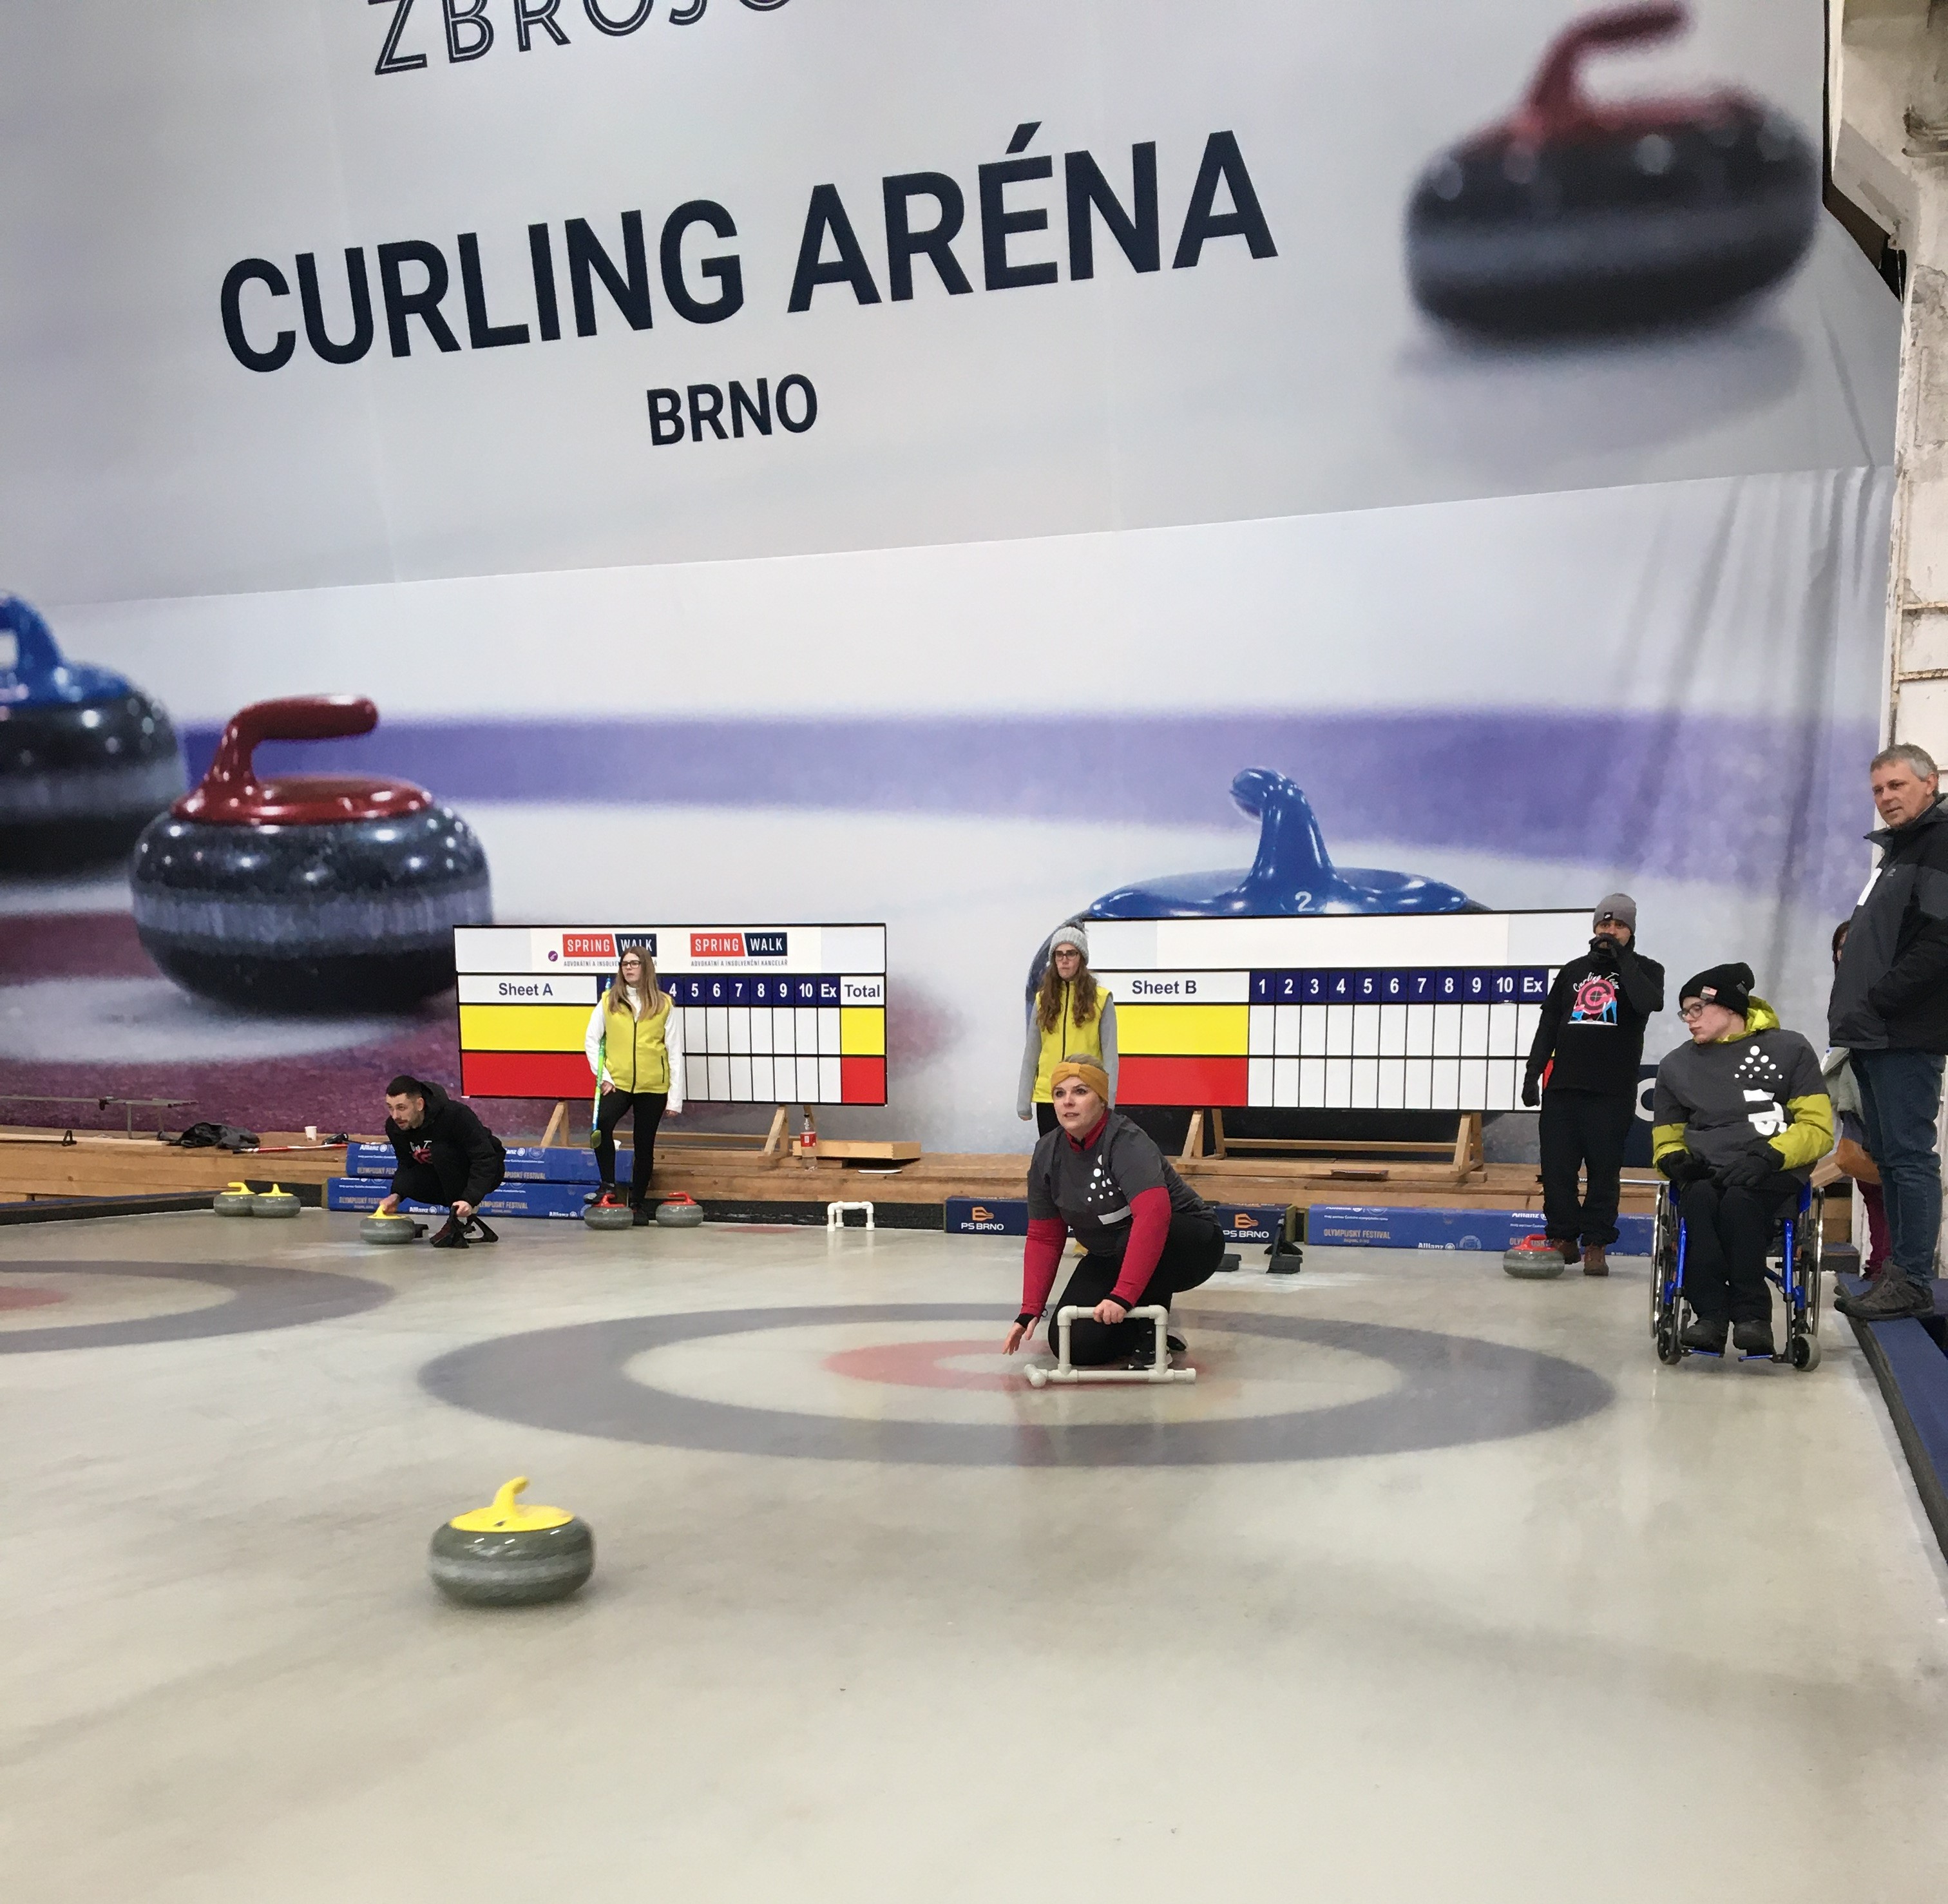 Hráli jsme curling pro Ligu vozíčkářů